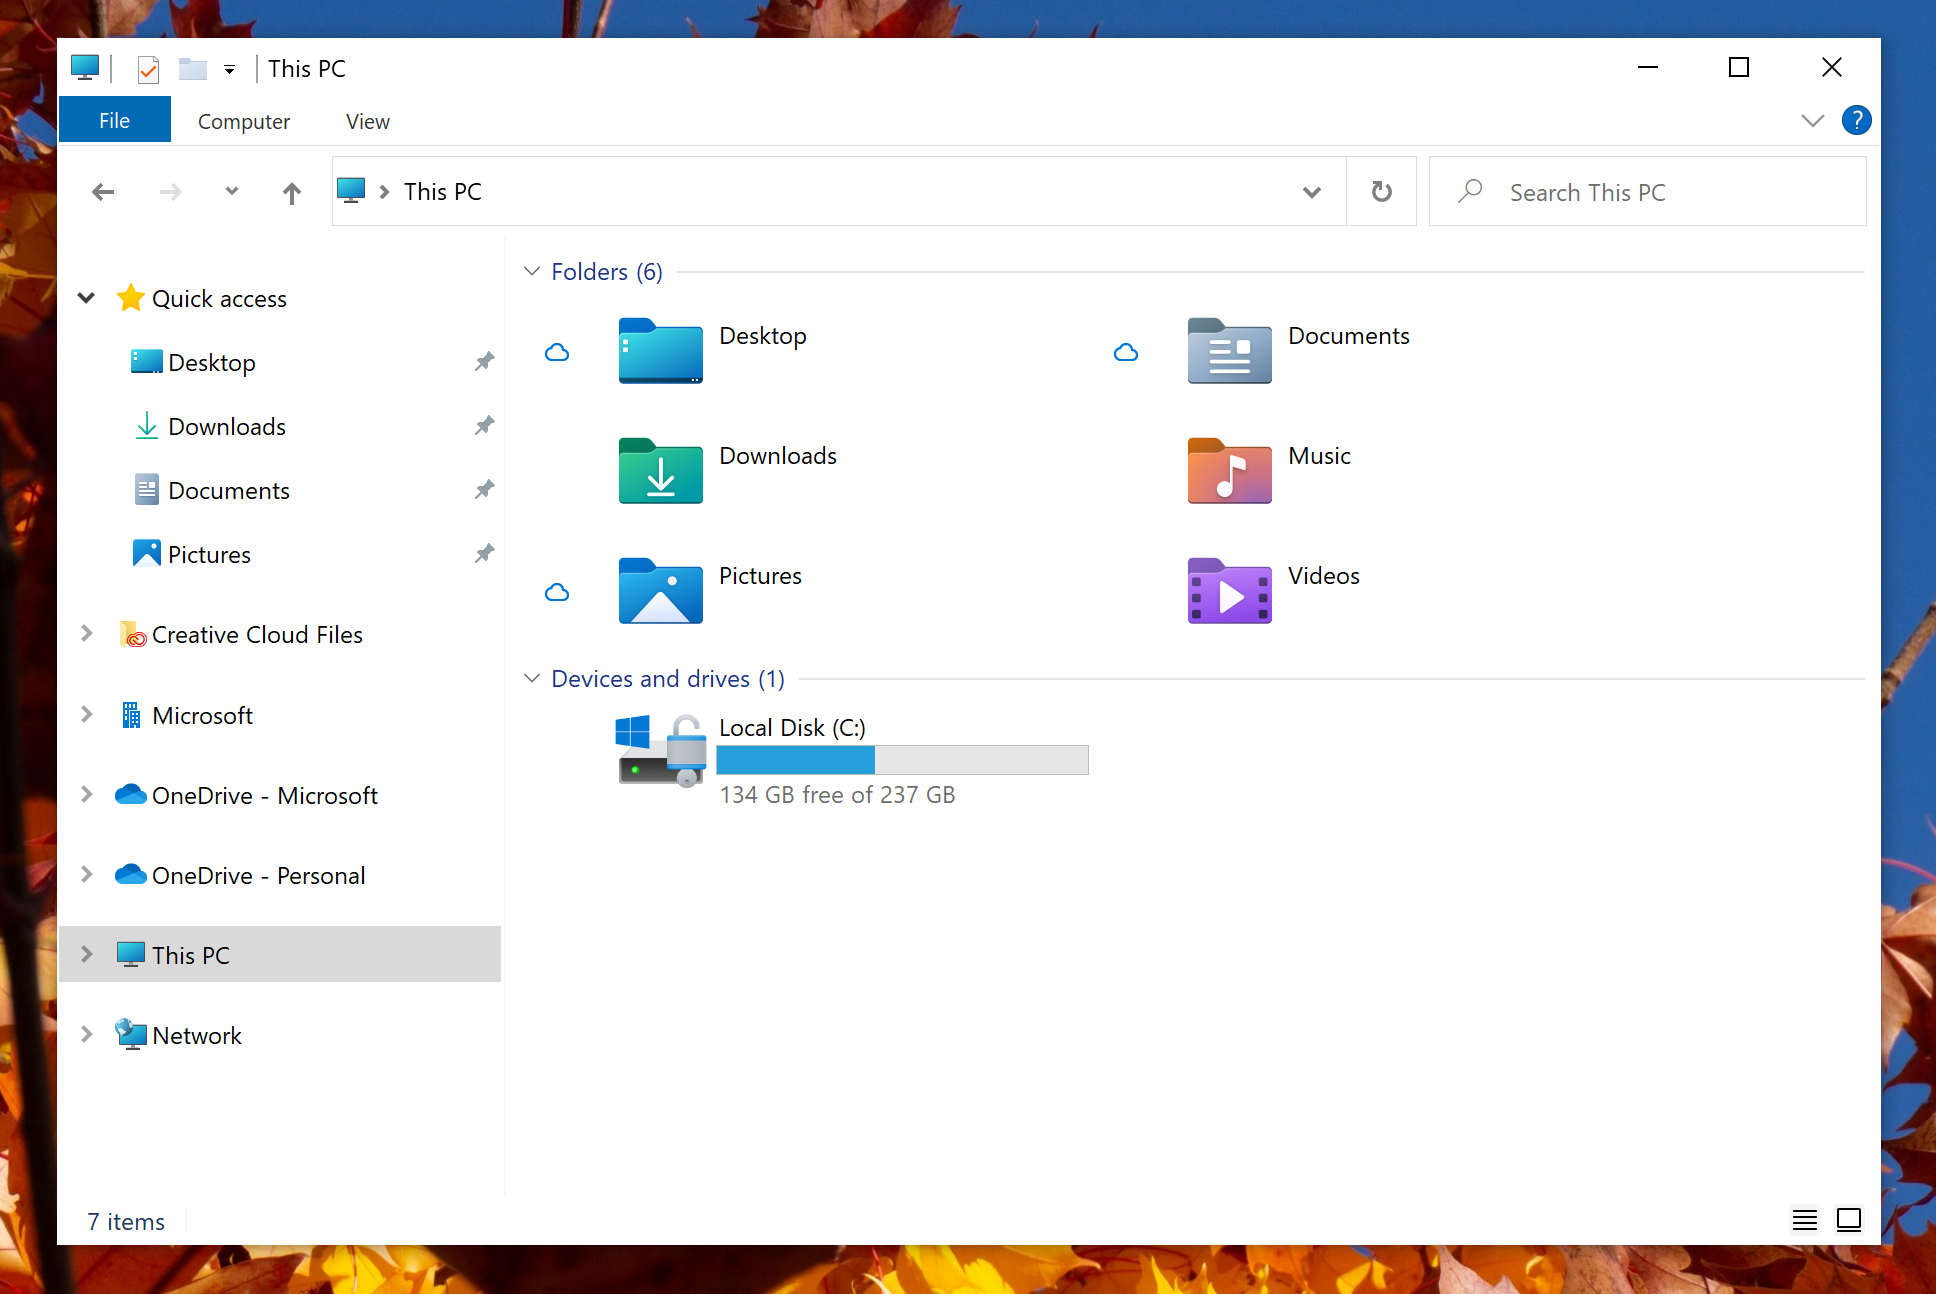 Microsoft Memperkenalkan Rekaan Ikon File Explorer Baru Untuk Windows 10 Insider Build Terkini